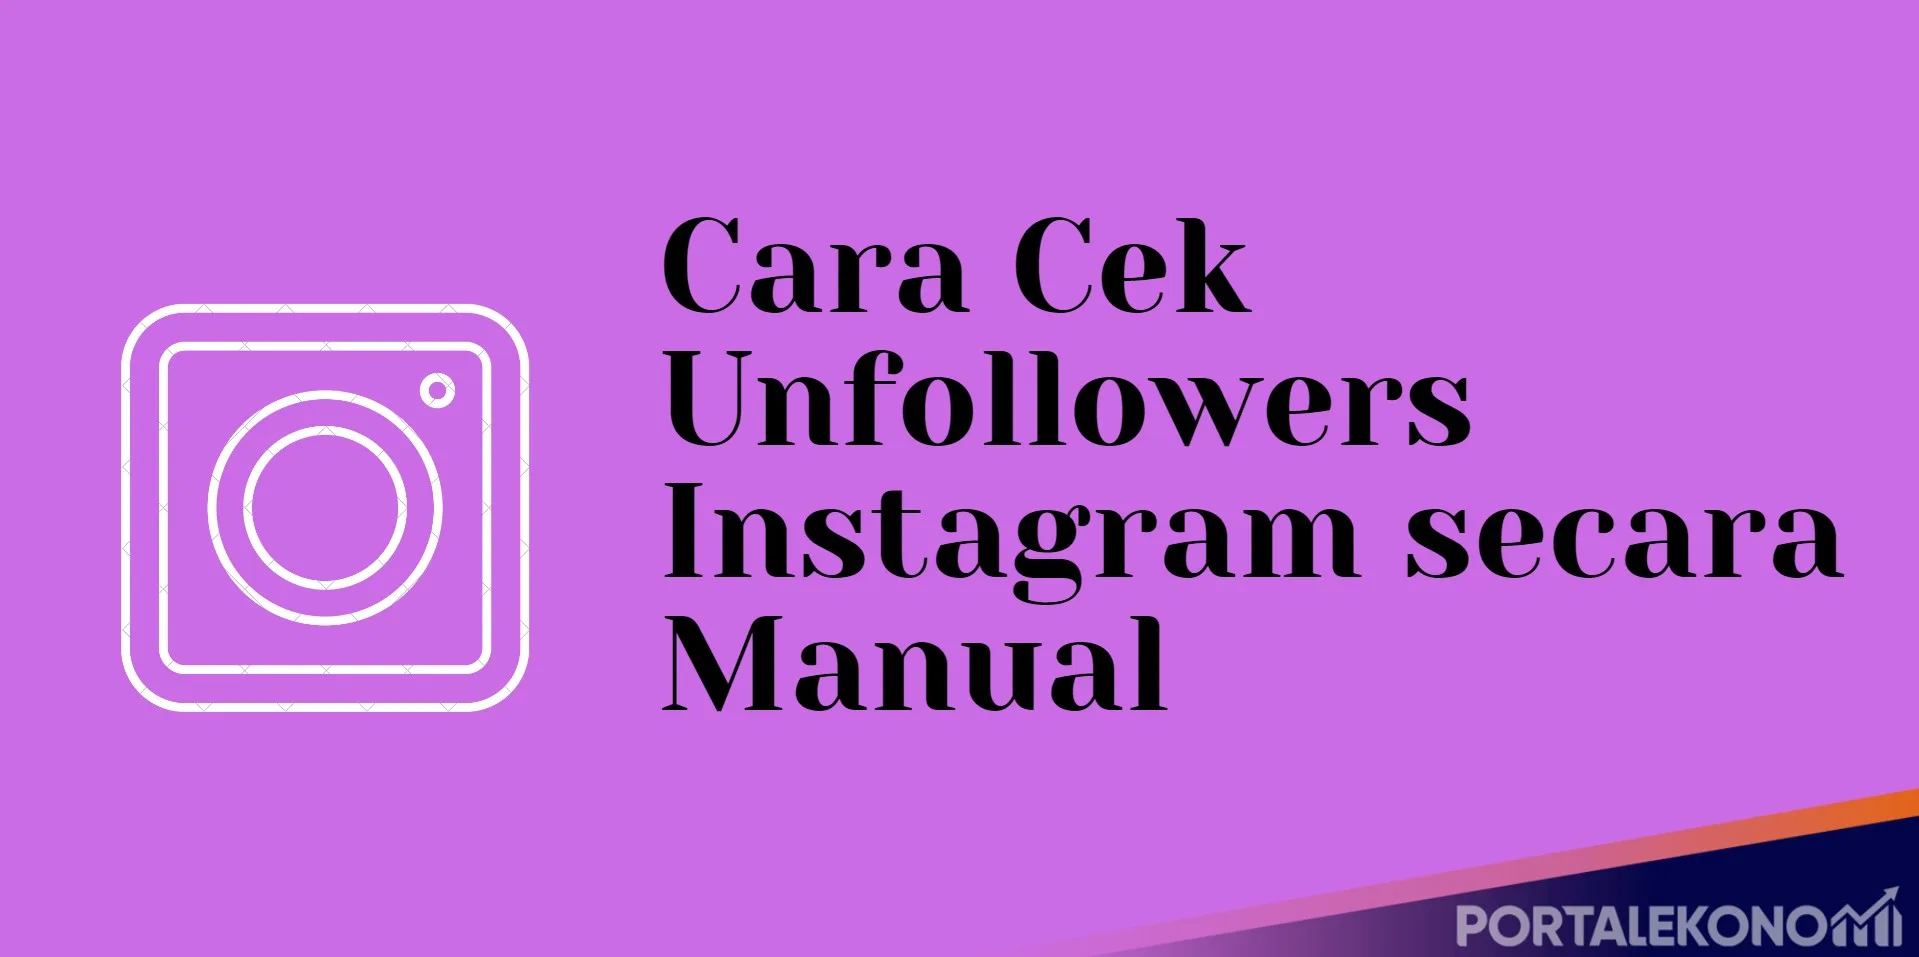 Cara Cek Unfollowers Instagram secara Manual